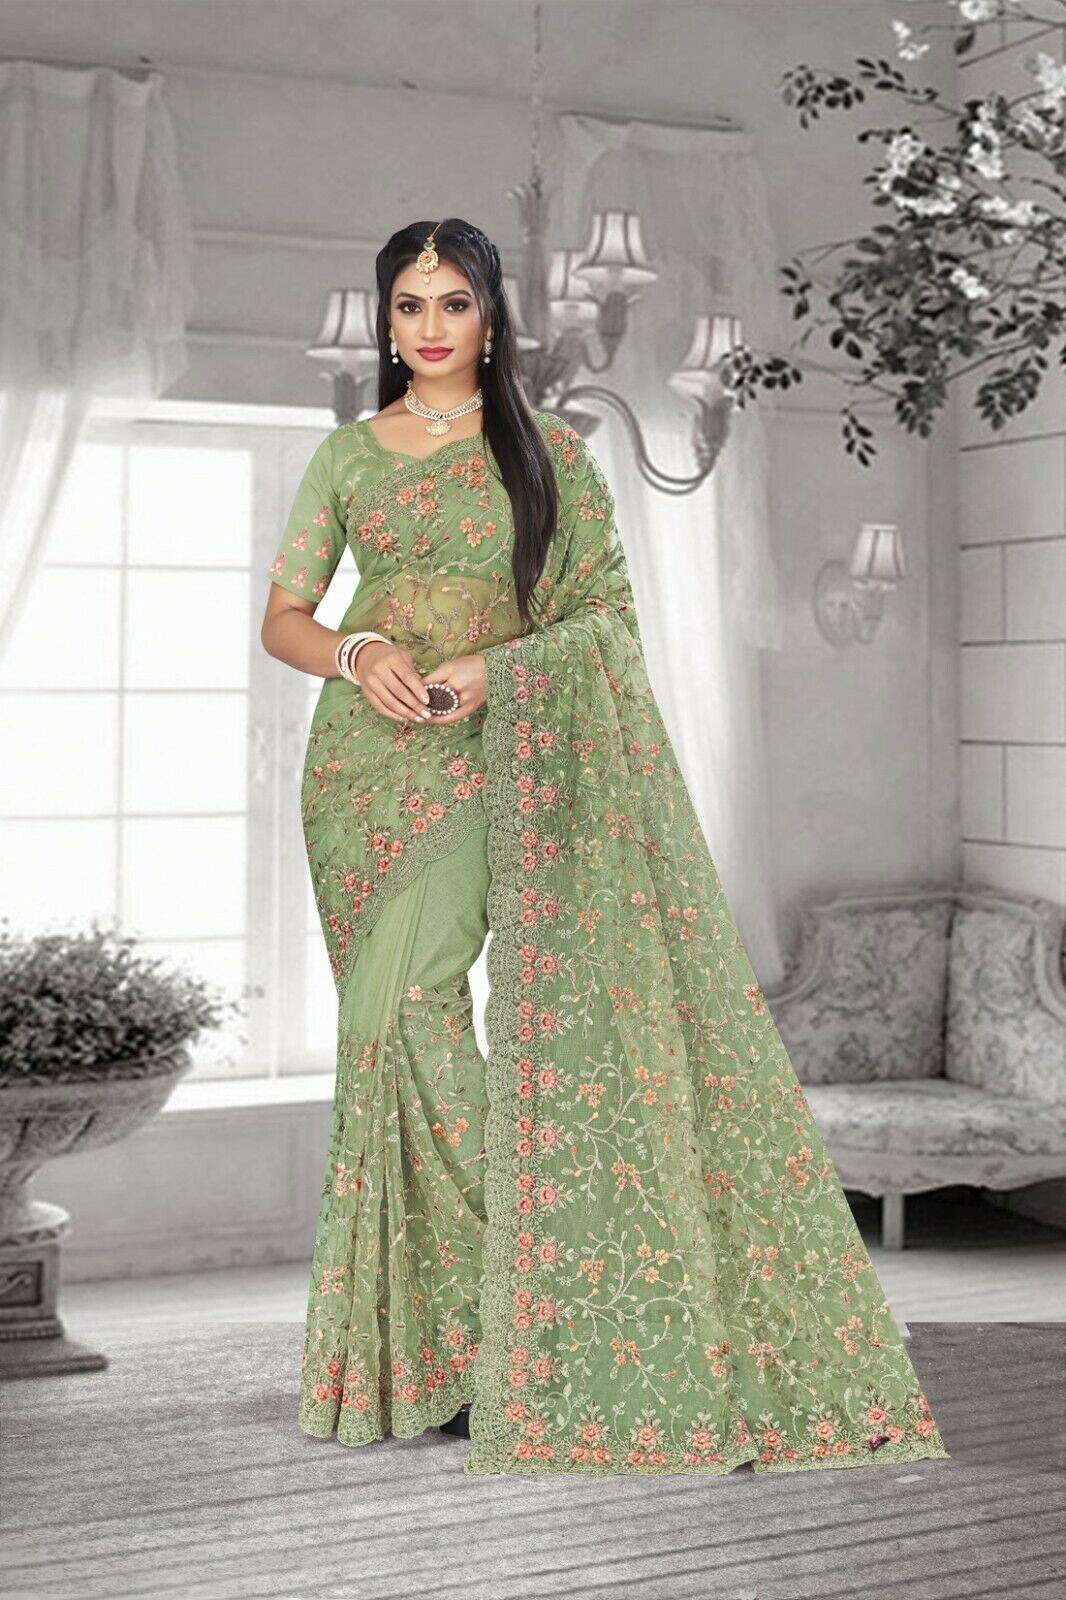 Designer Dusty Pista Resham Coding Embroidery Work Sari Net Wedding Wear Saree